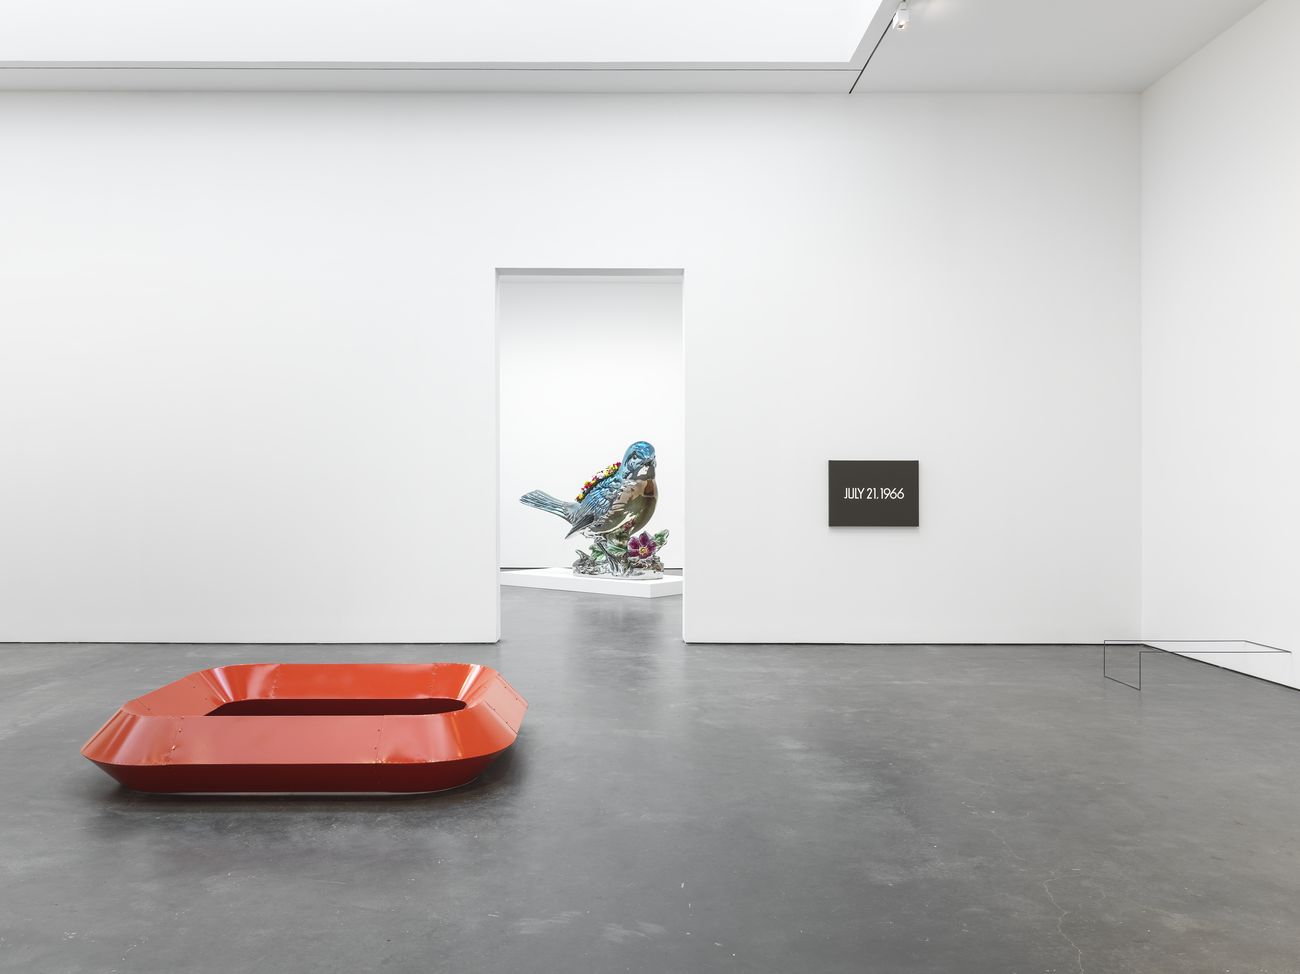 David Zwirner. 25 Years. Installation view at David Zwirner, New York 2018. Courtesy David Zwirner, New York London Hong Kong